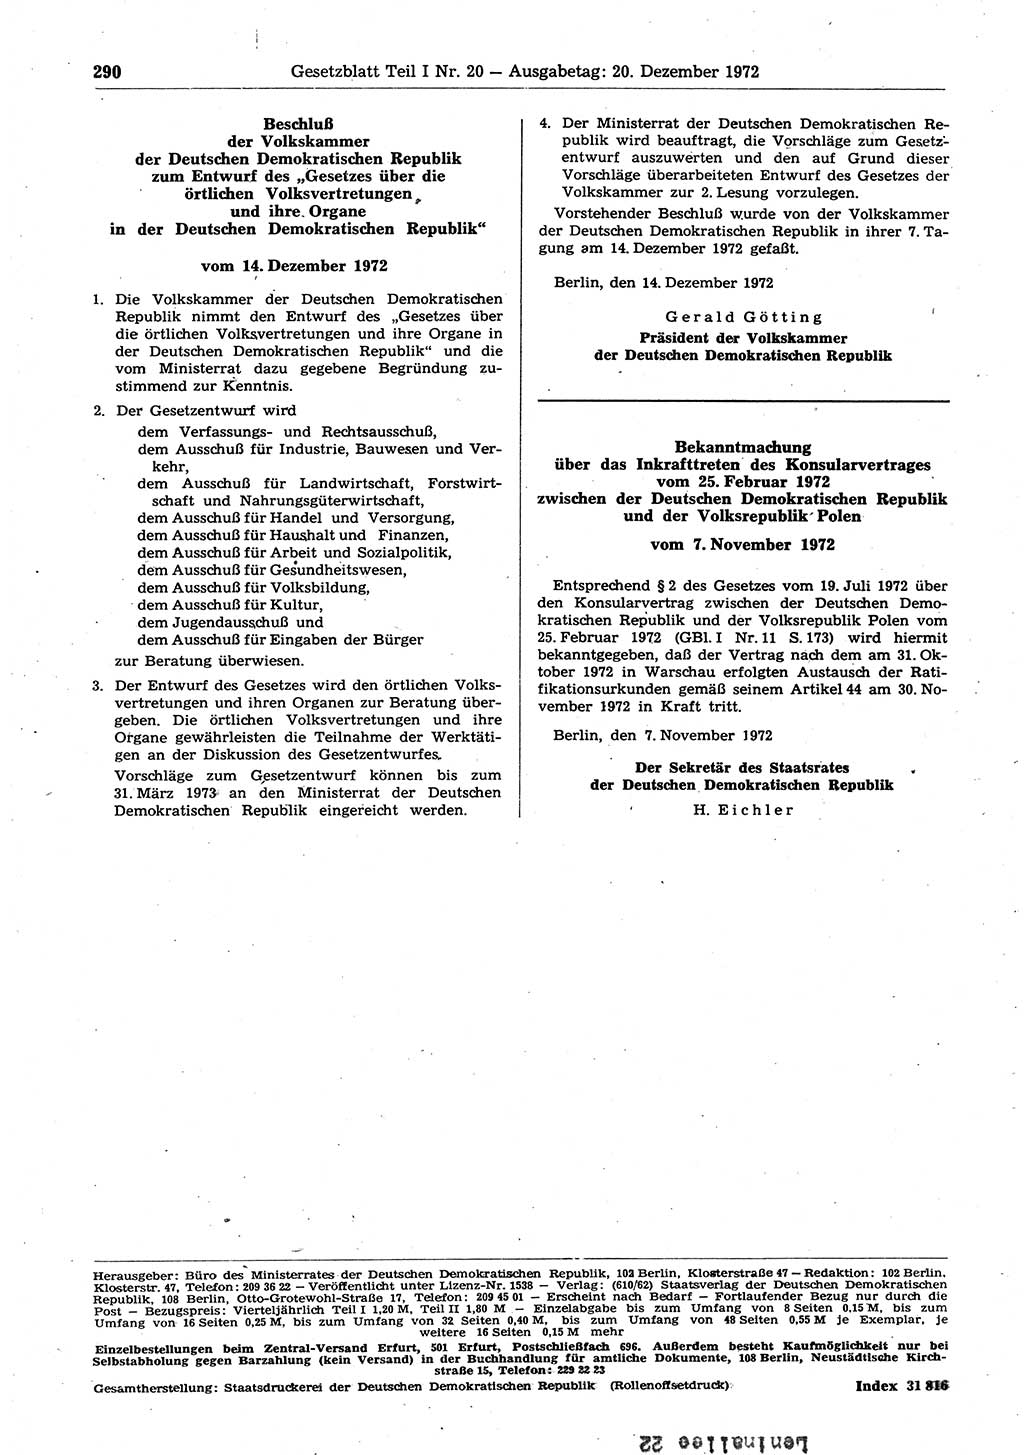 Gesetzblatt (GBl.) der Deutschen Demokratischen Republik (DDR) Teil Ⅰ 1972, Seite 290 (GBl. DDR Ⅰ 1972, S. 290)